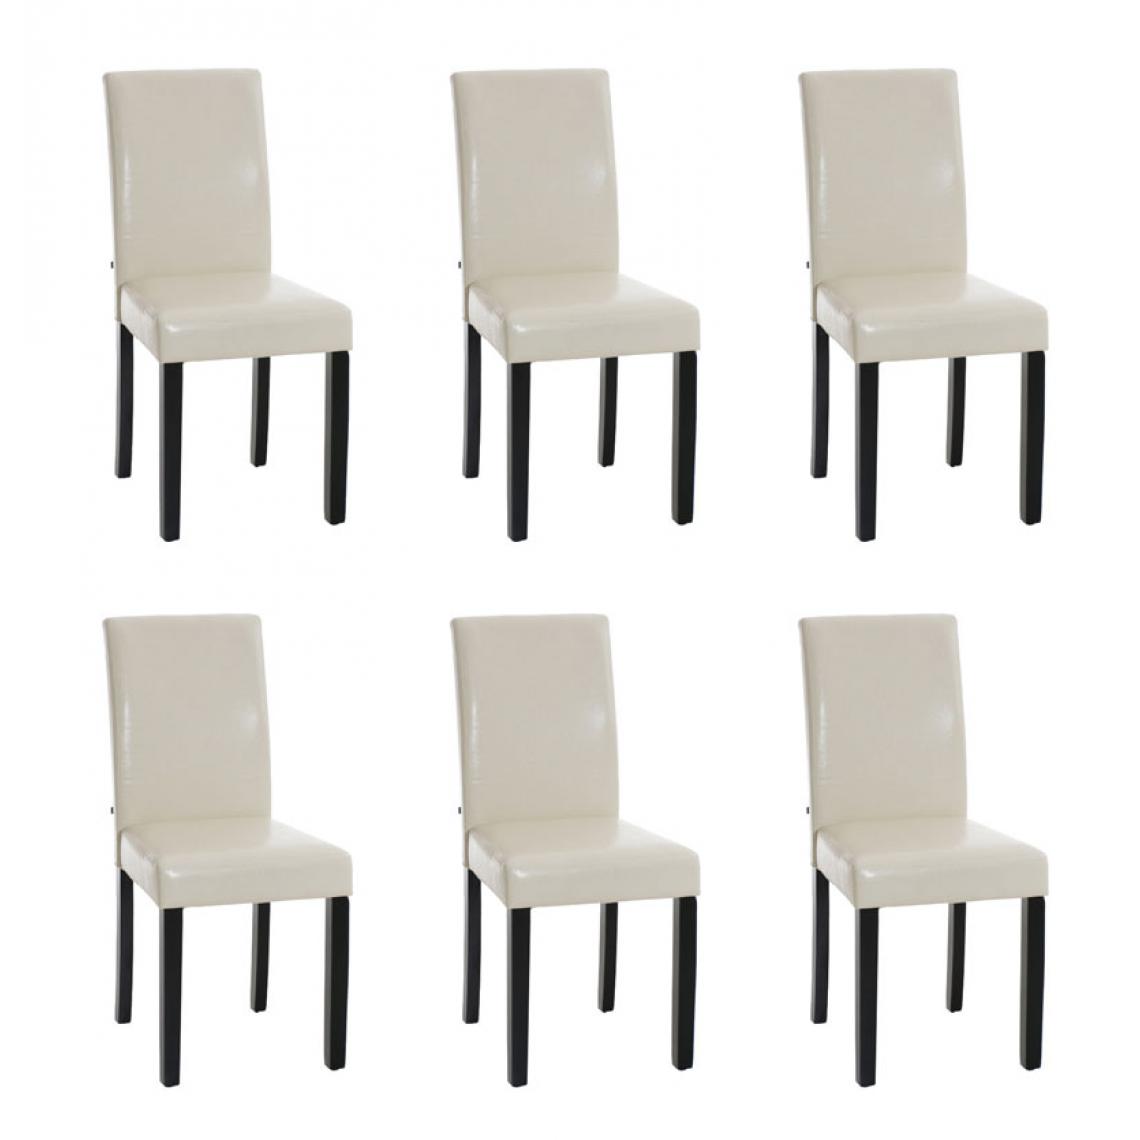 Icaverne - Distingué Lot de 6 chaises de salle à manger categorie Rabat noir couleur crème - Chaises